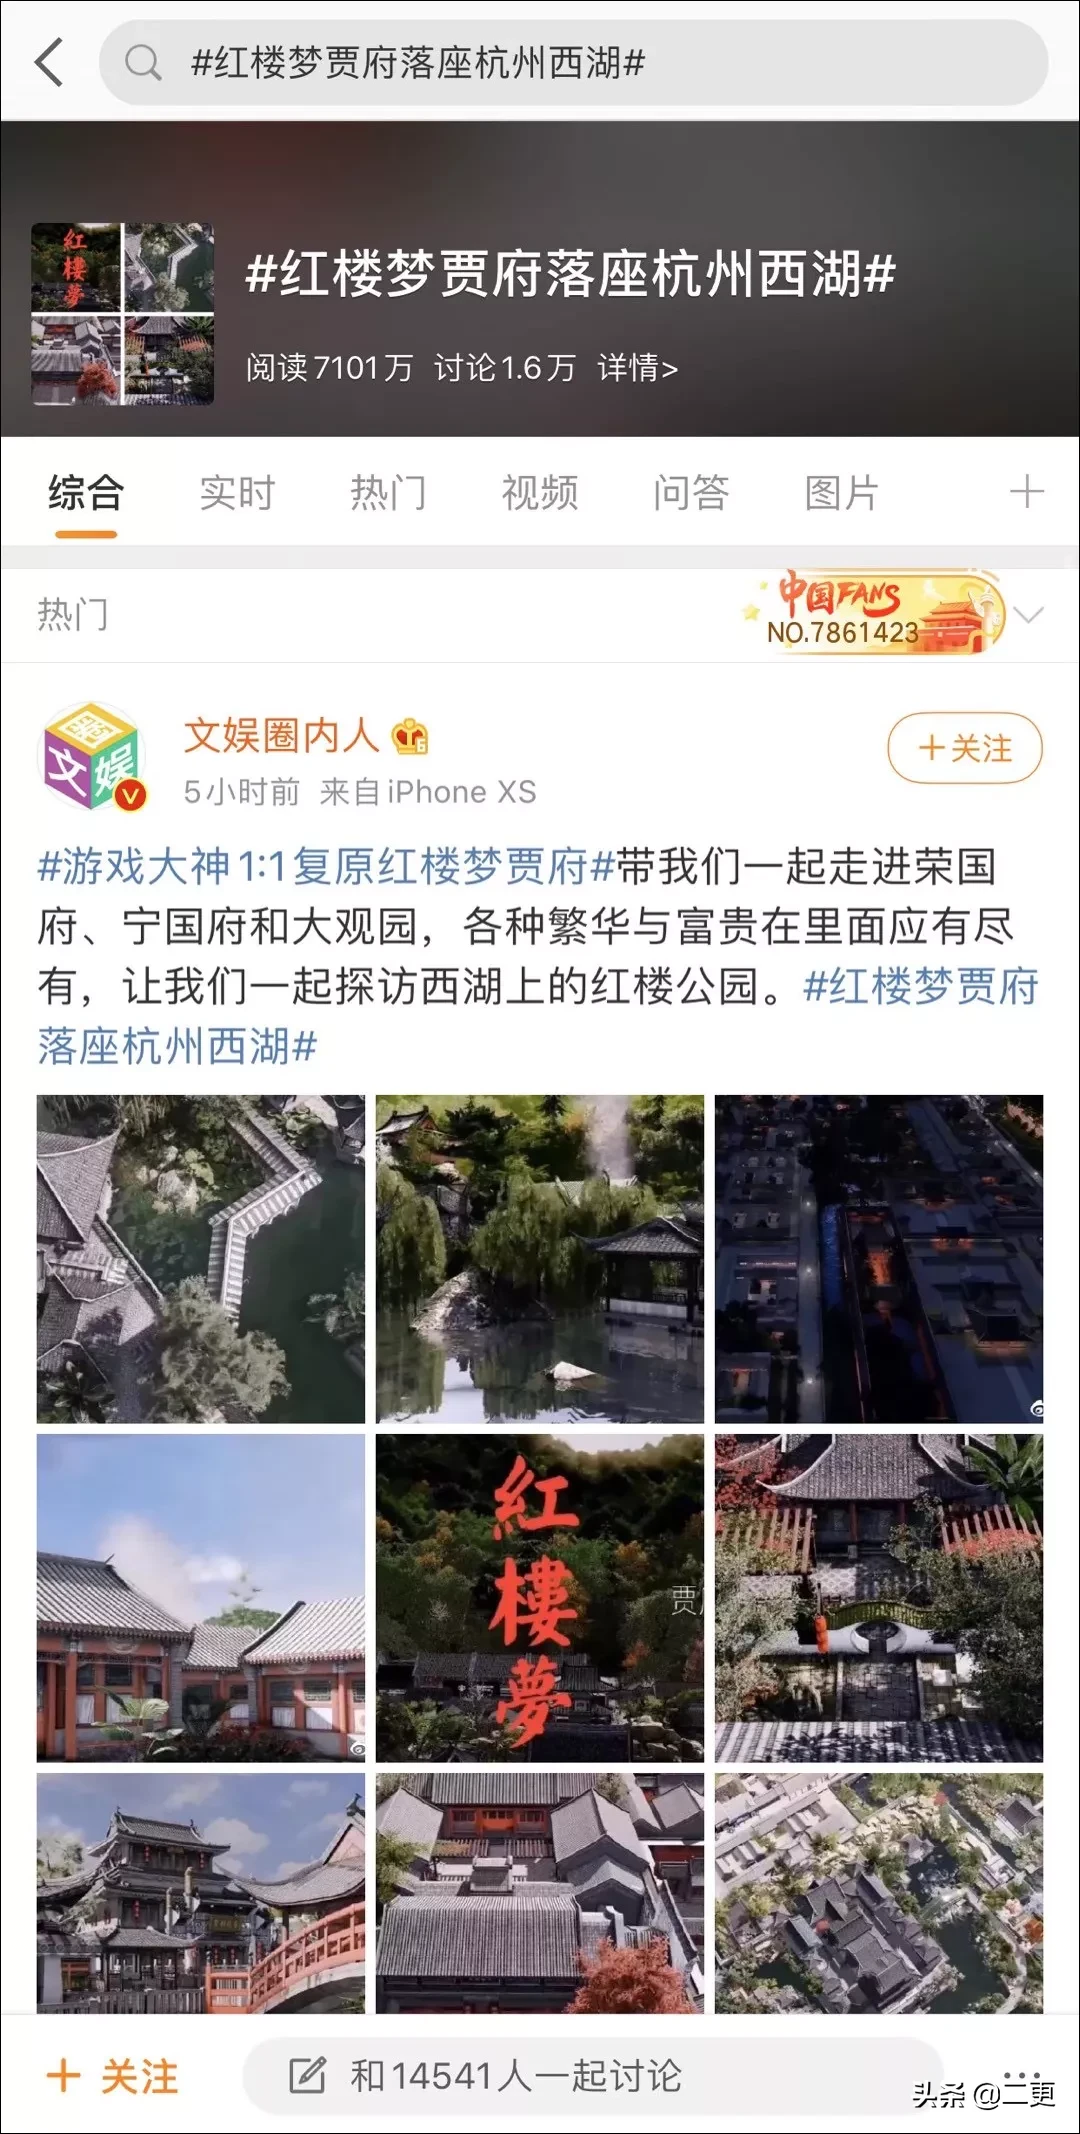 他用3年建一座杭州城，3个月还原《红楼梦》大观园，惊艳网友